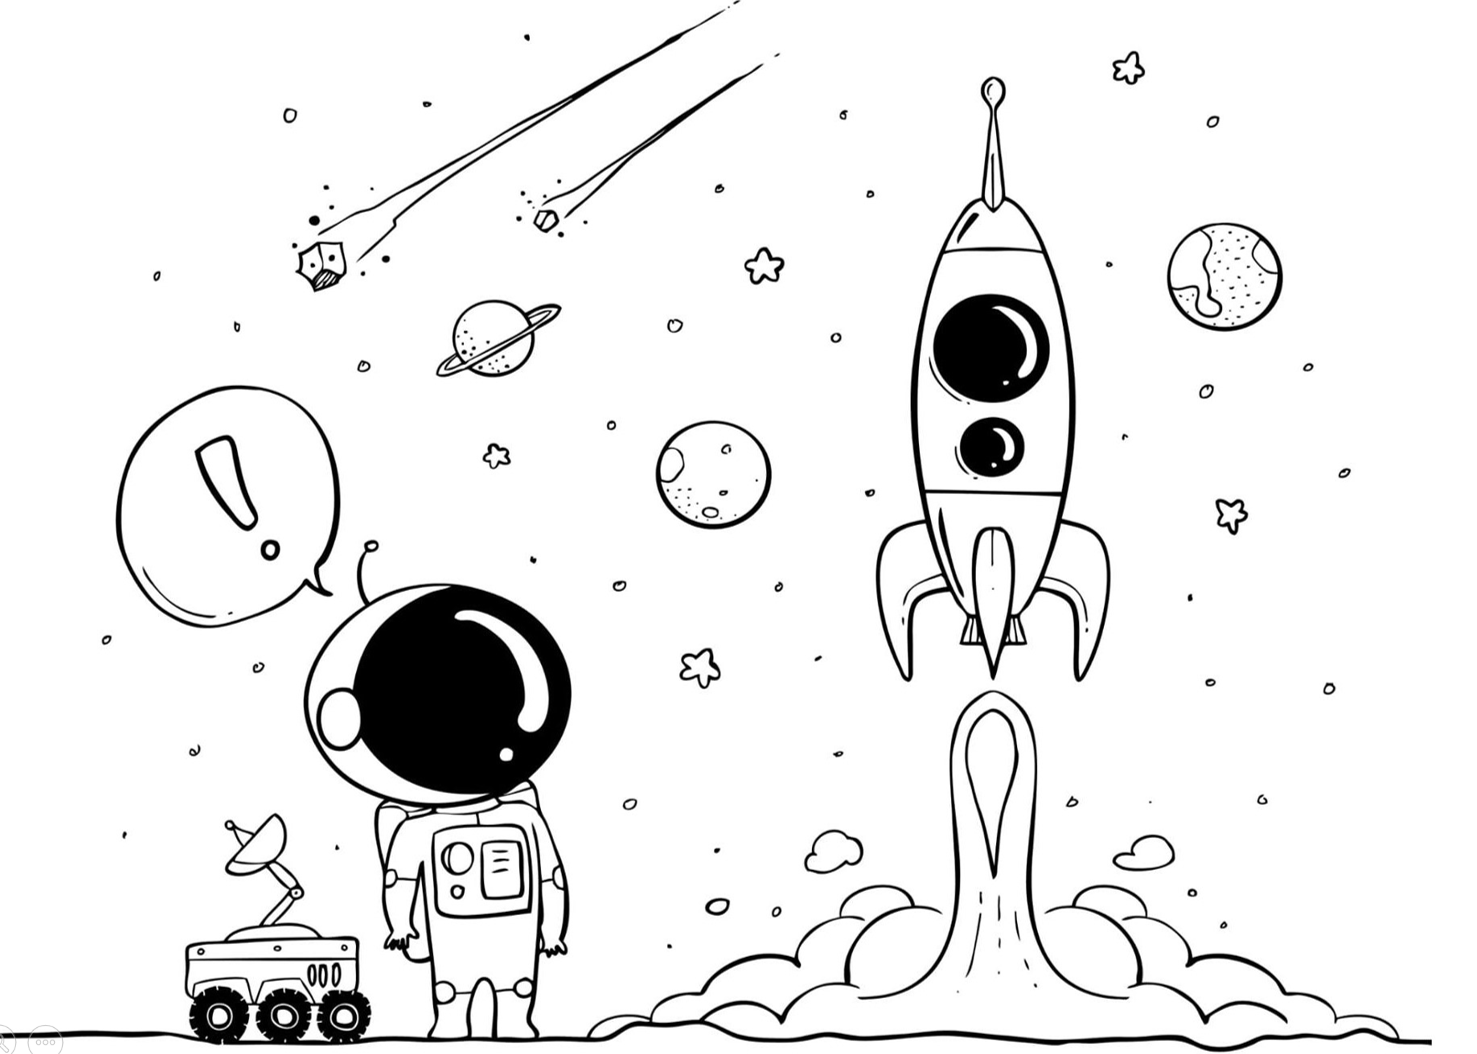 Рисунок на тему космос. Рисунок на тему космос карандашом. Рисунок на тему космос карандашом для срисовки. Космический рисунок карандашом. Легкие рисунки про космос